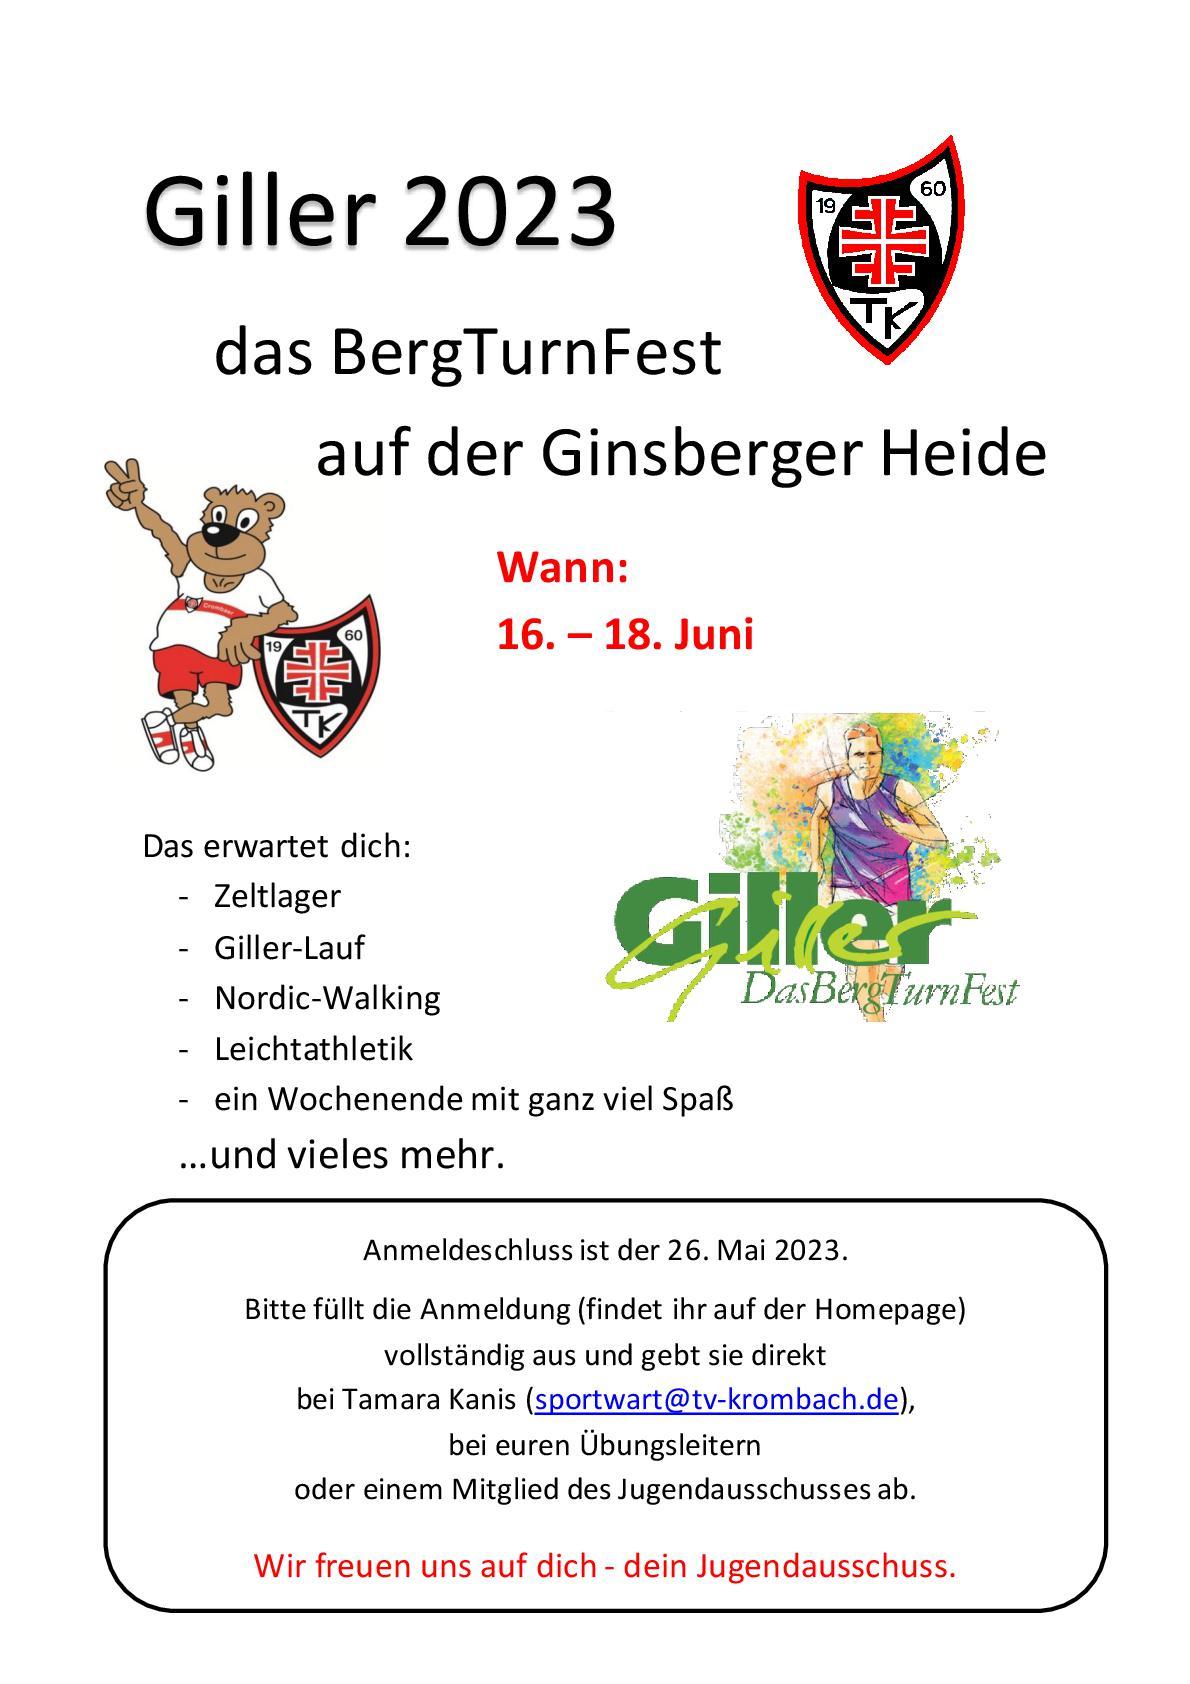 Giller 2023 BergTurnFest